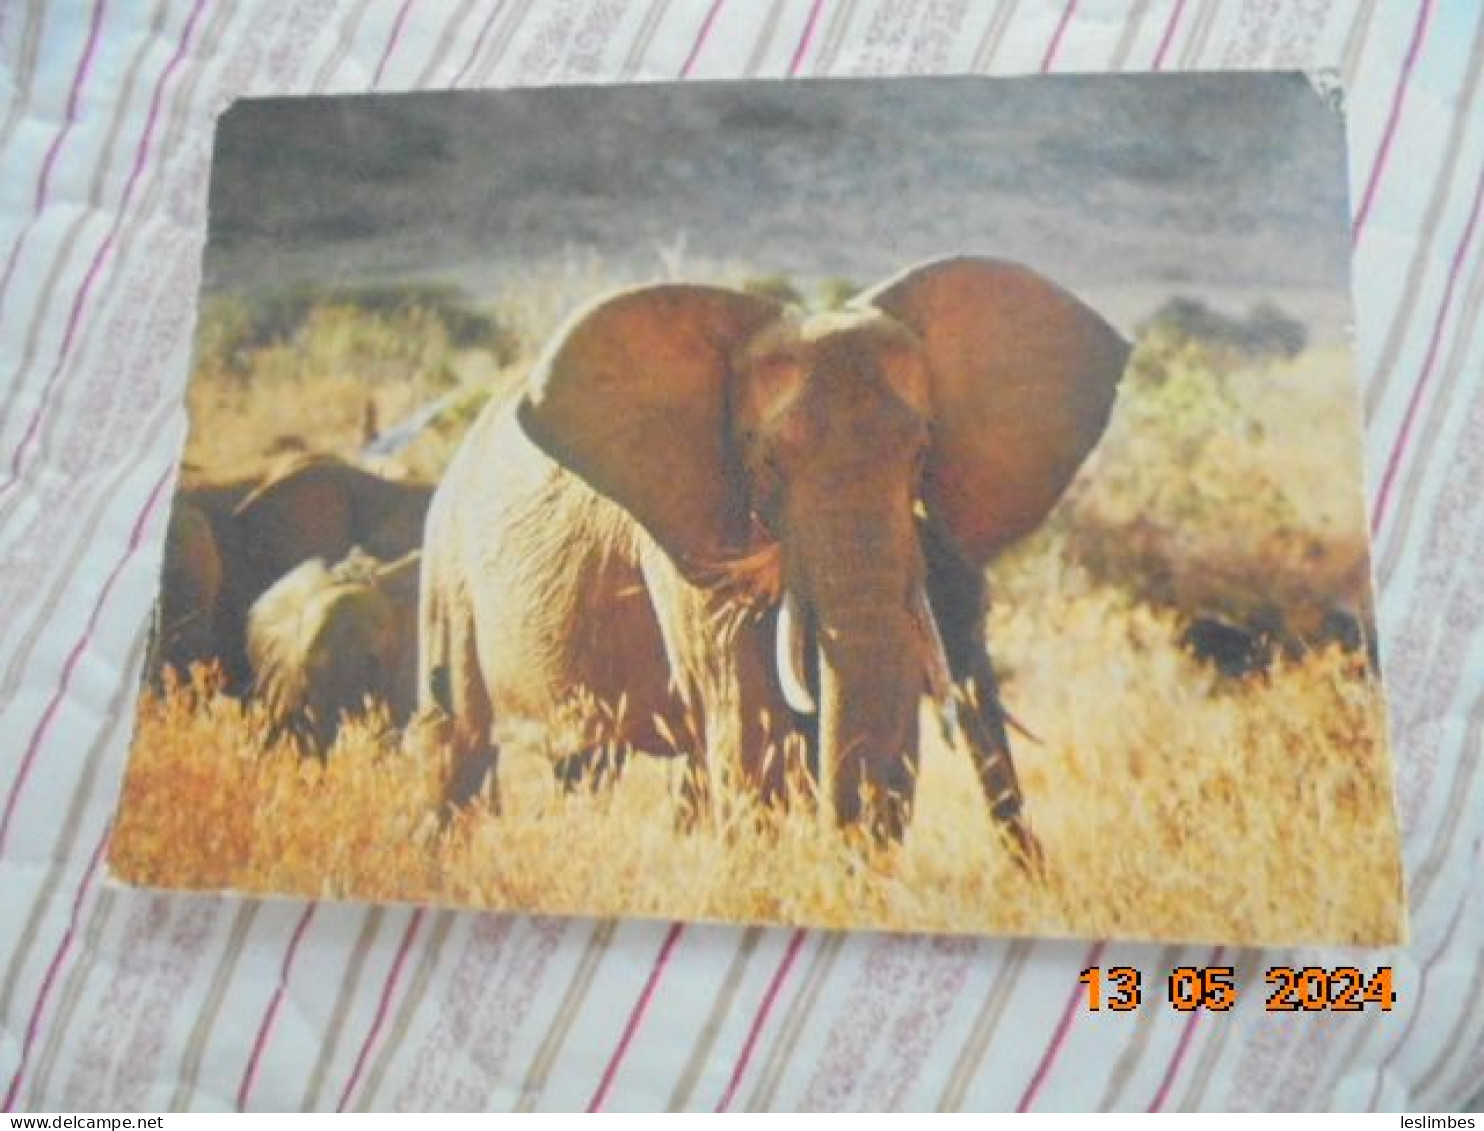 Elephants 363/1 - Éléphants